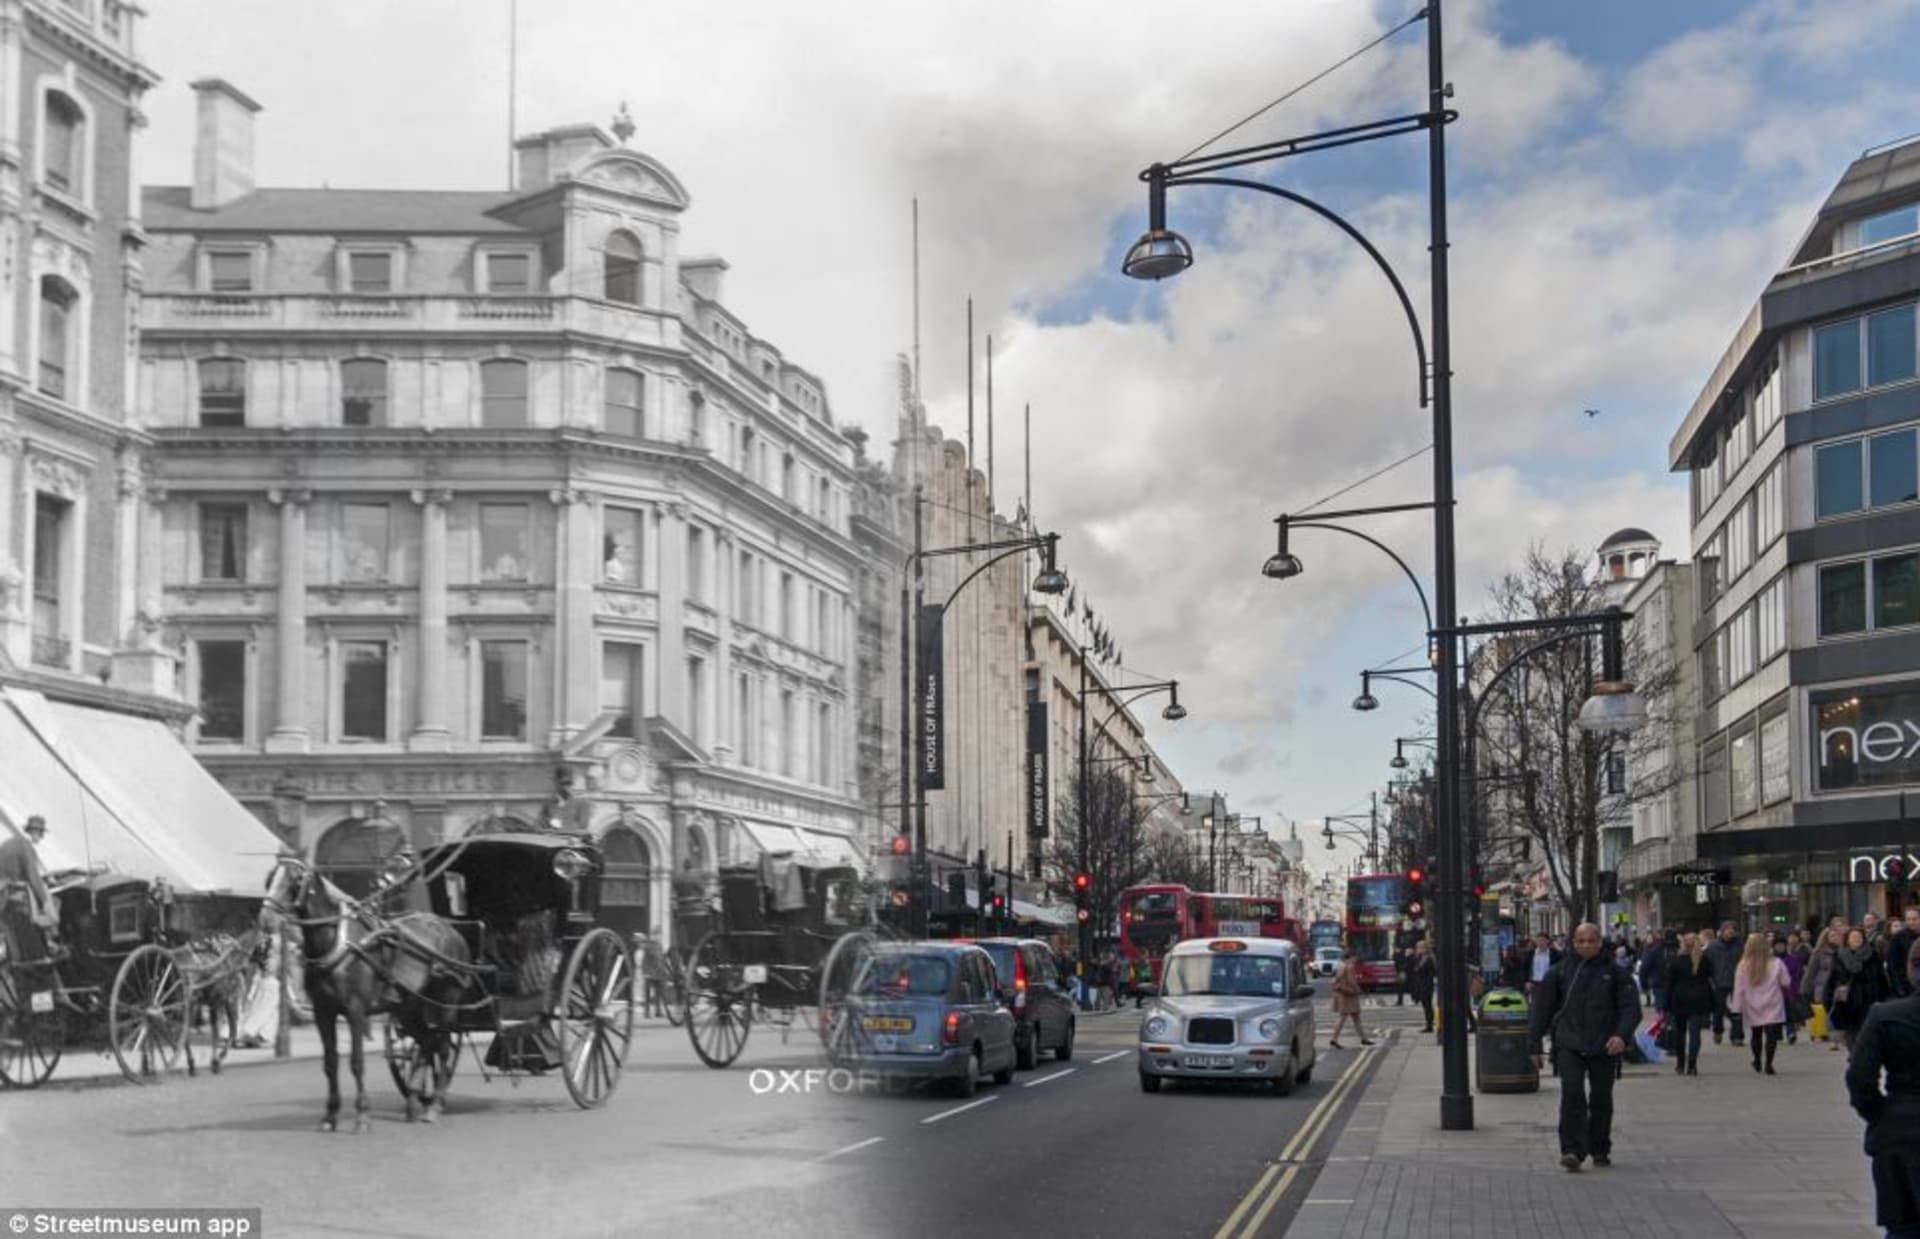 Lidé a provoz v ulici Oxford Street na přelomu 20. století. Christina Broom v této době fotografovala v Londýně pouliční scény jako pohlednice na prodej